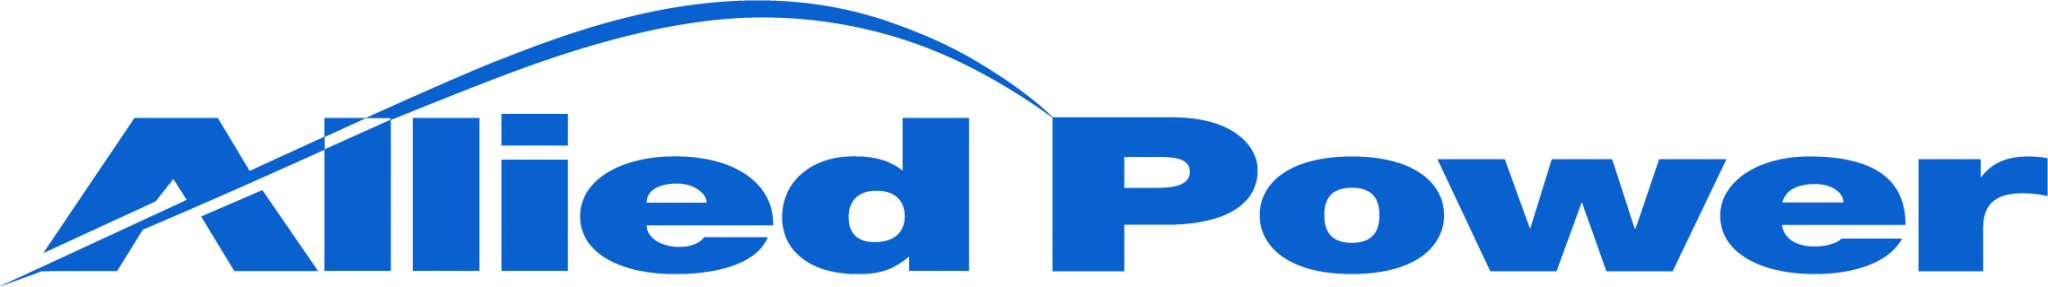 allied-power-logo-2048x287